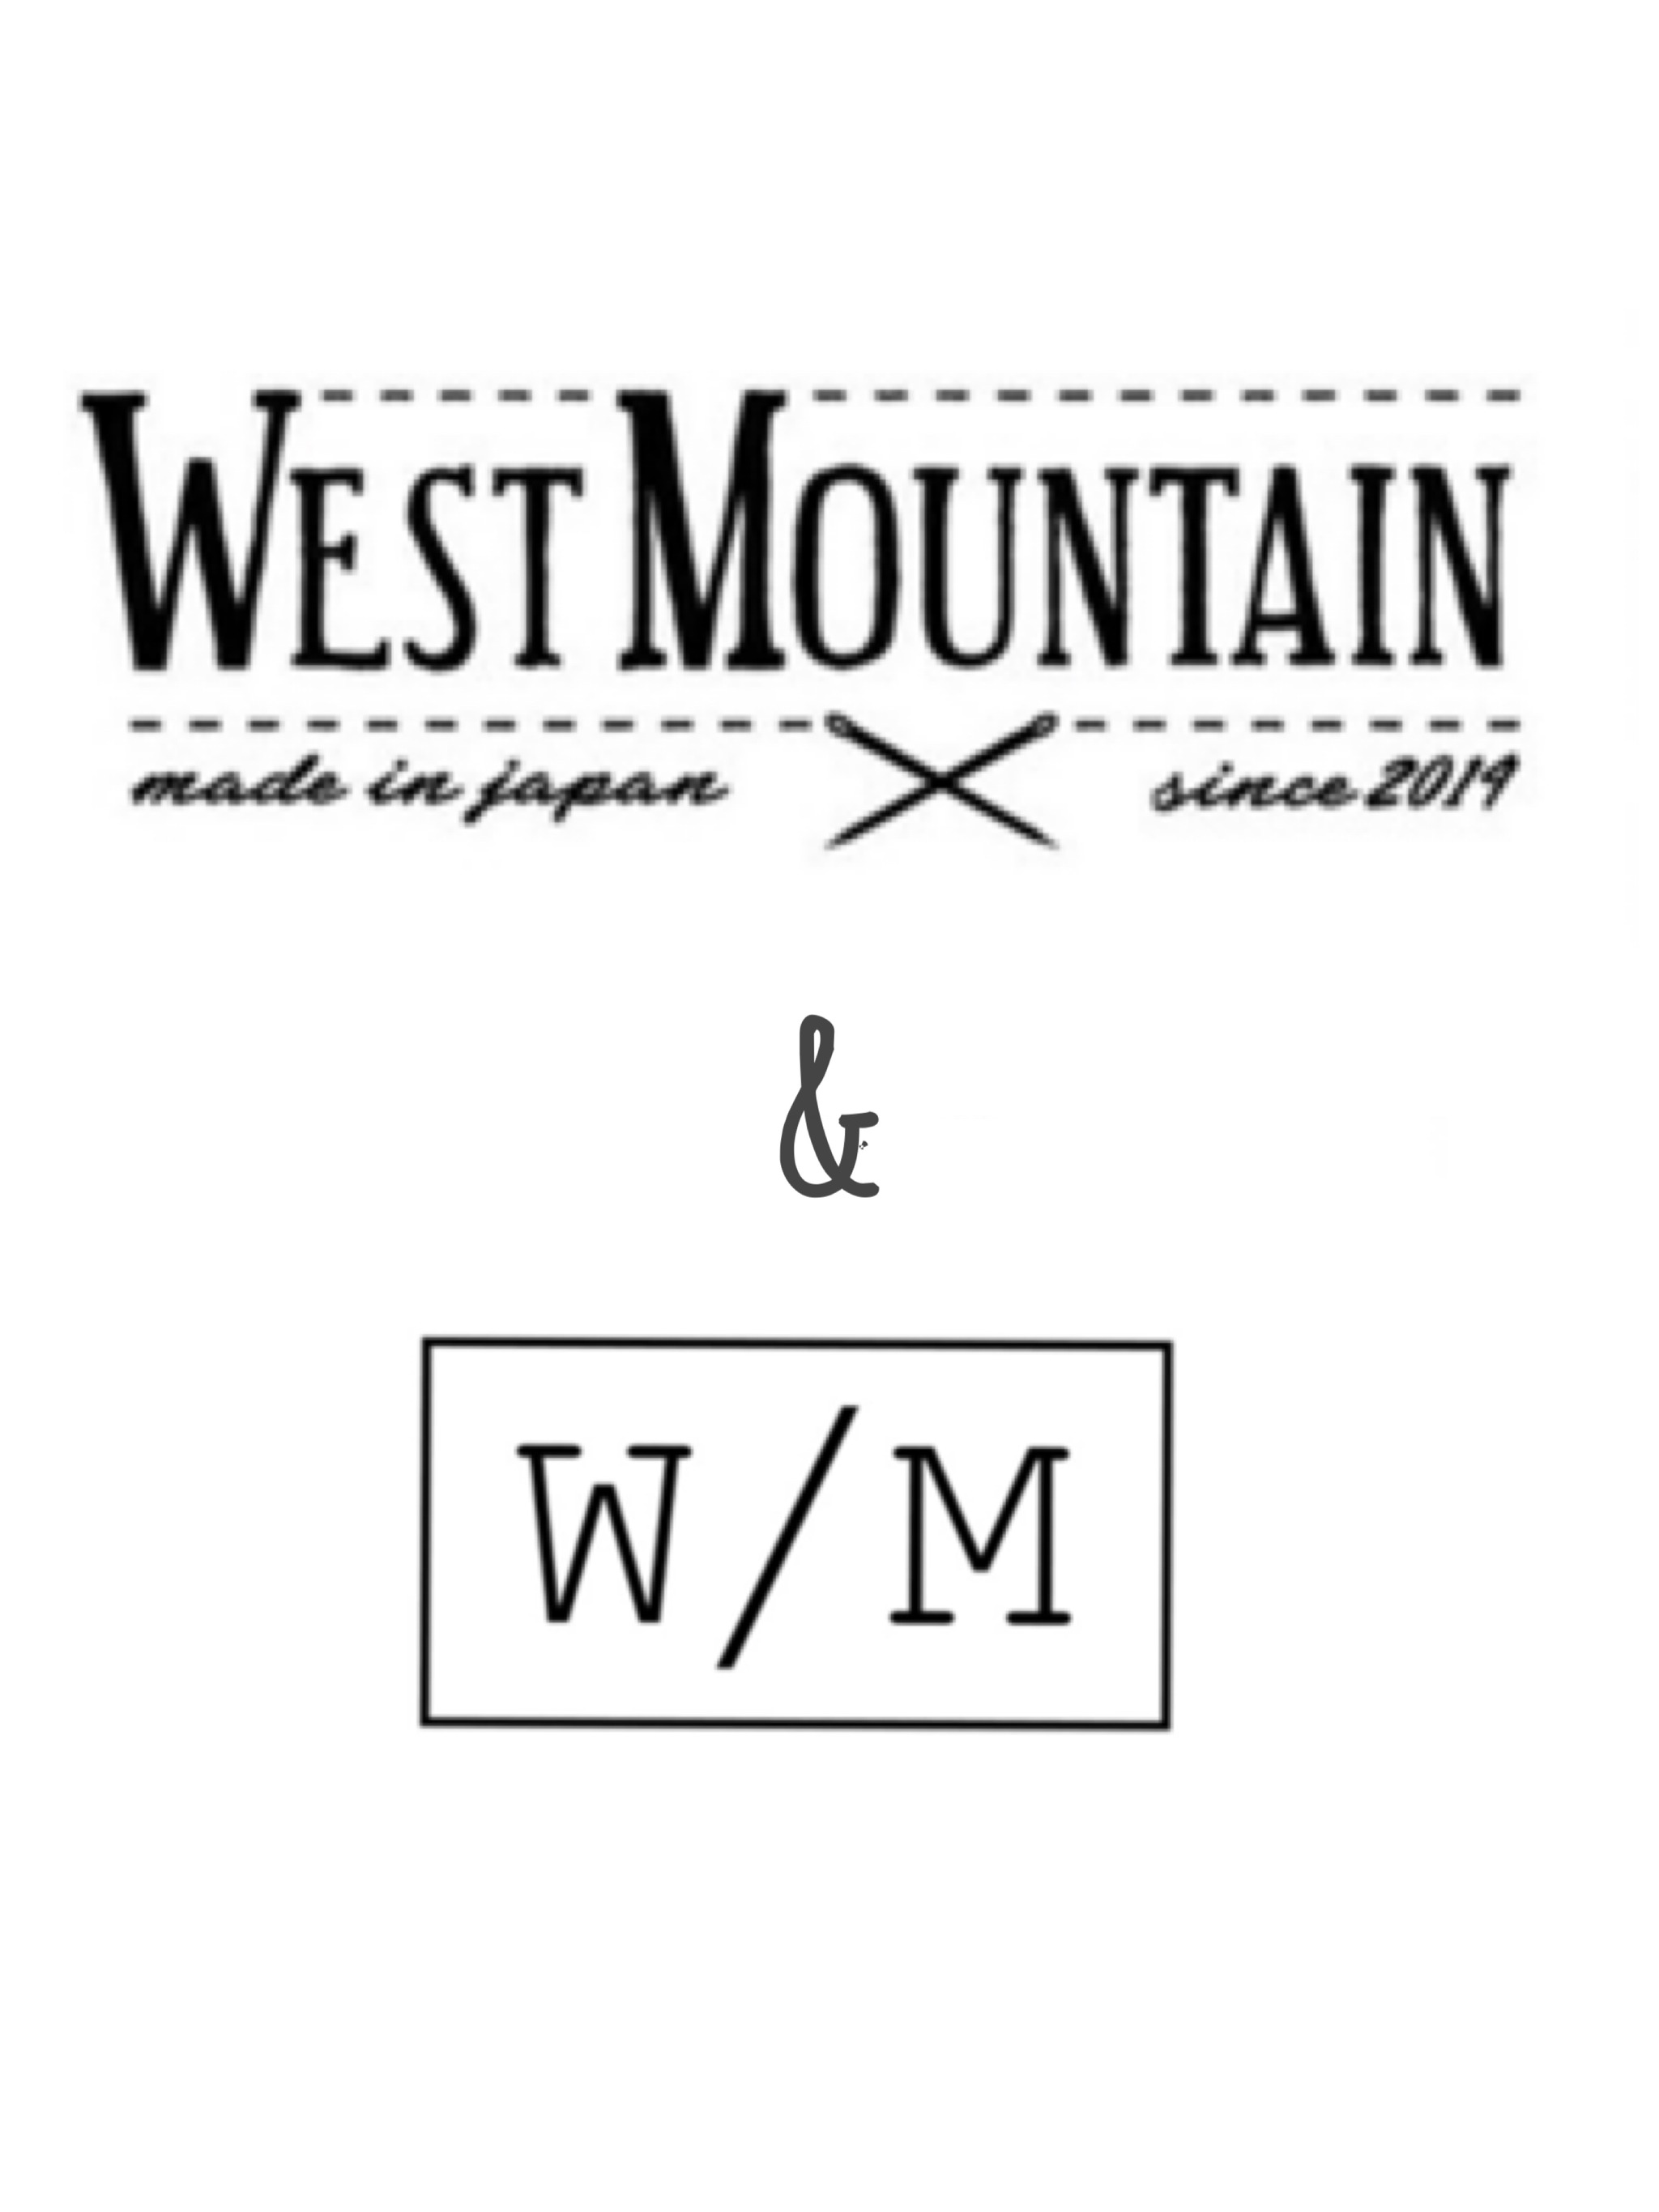 WEST MOUNTAIN & W/M